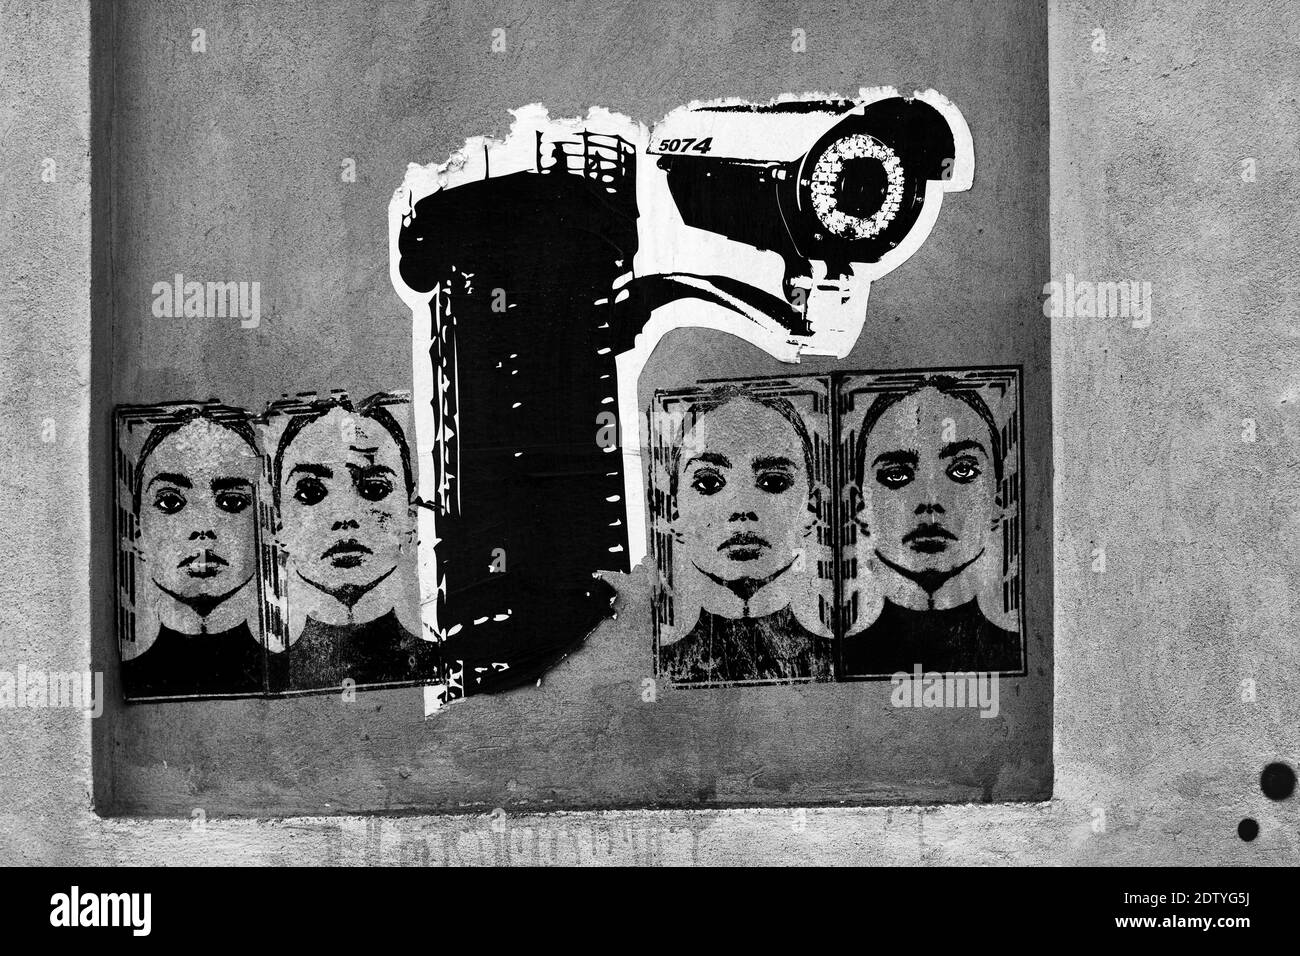 Des graffitis sont collés sur un mur représentant une caméra de surveillance et une femme. Image mono. Banque D'Images